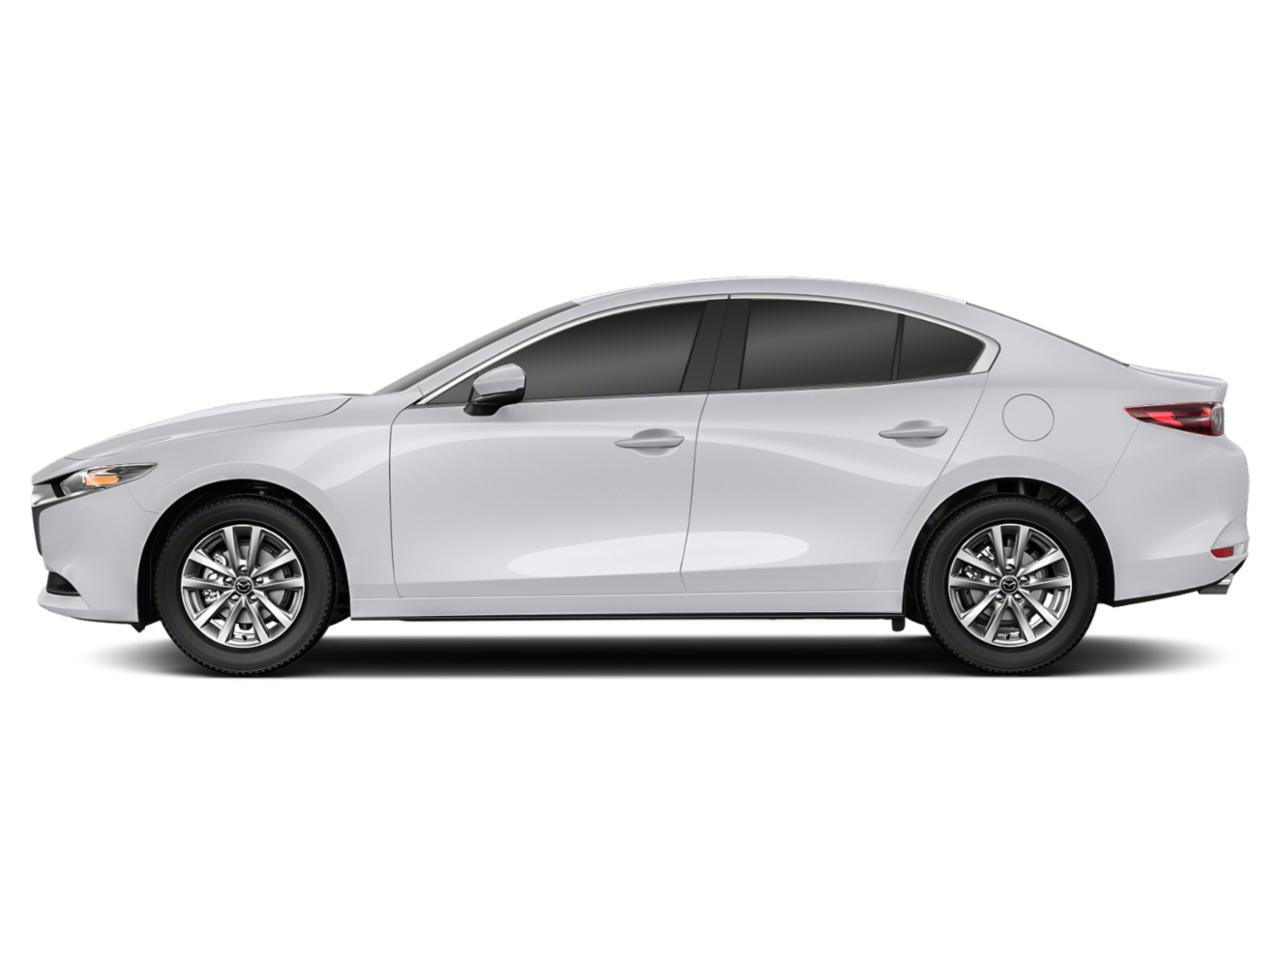 Mazda 3 exterior - Side Profile